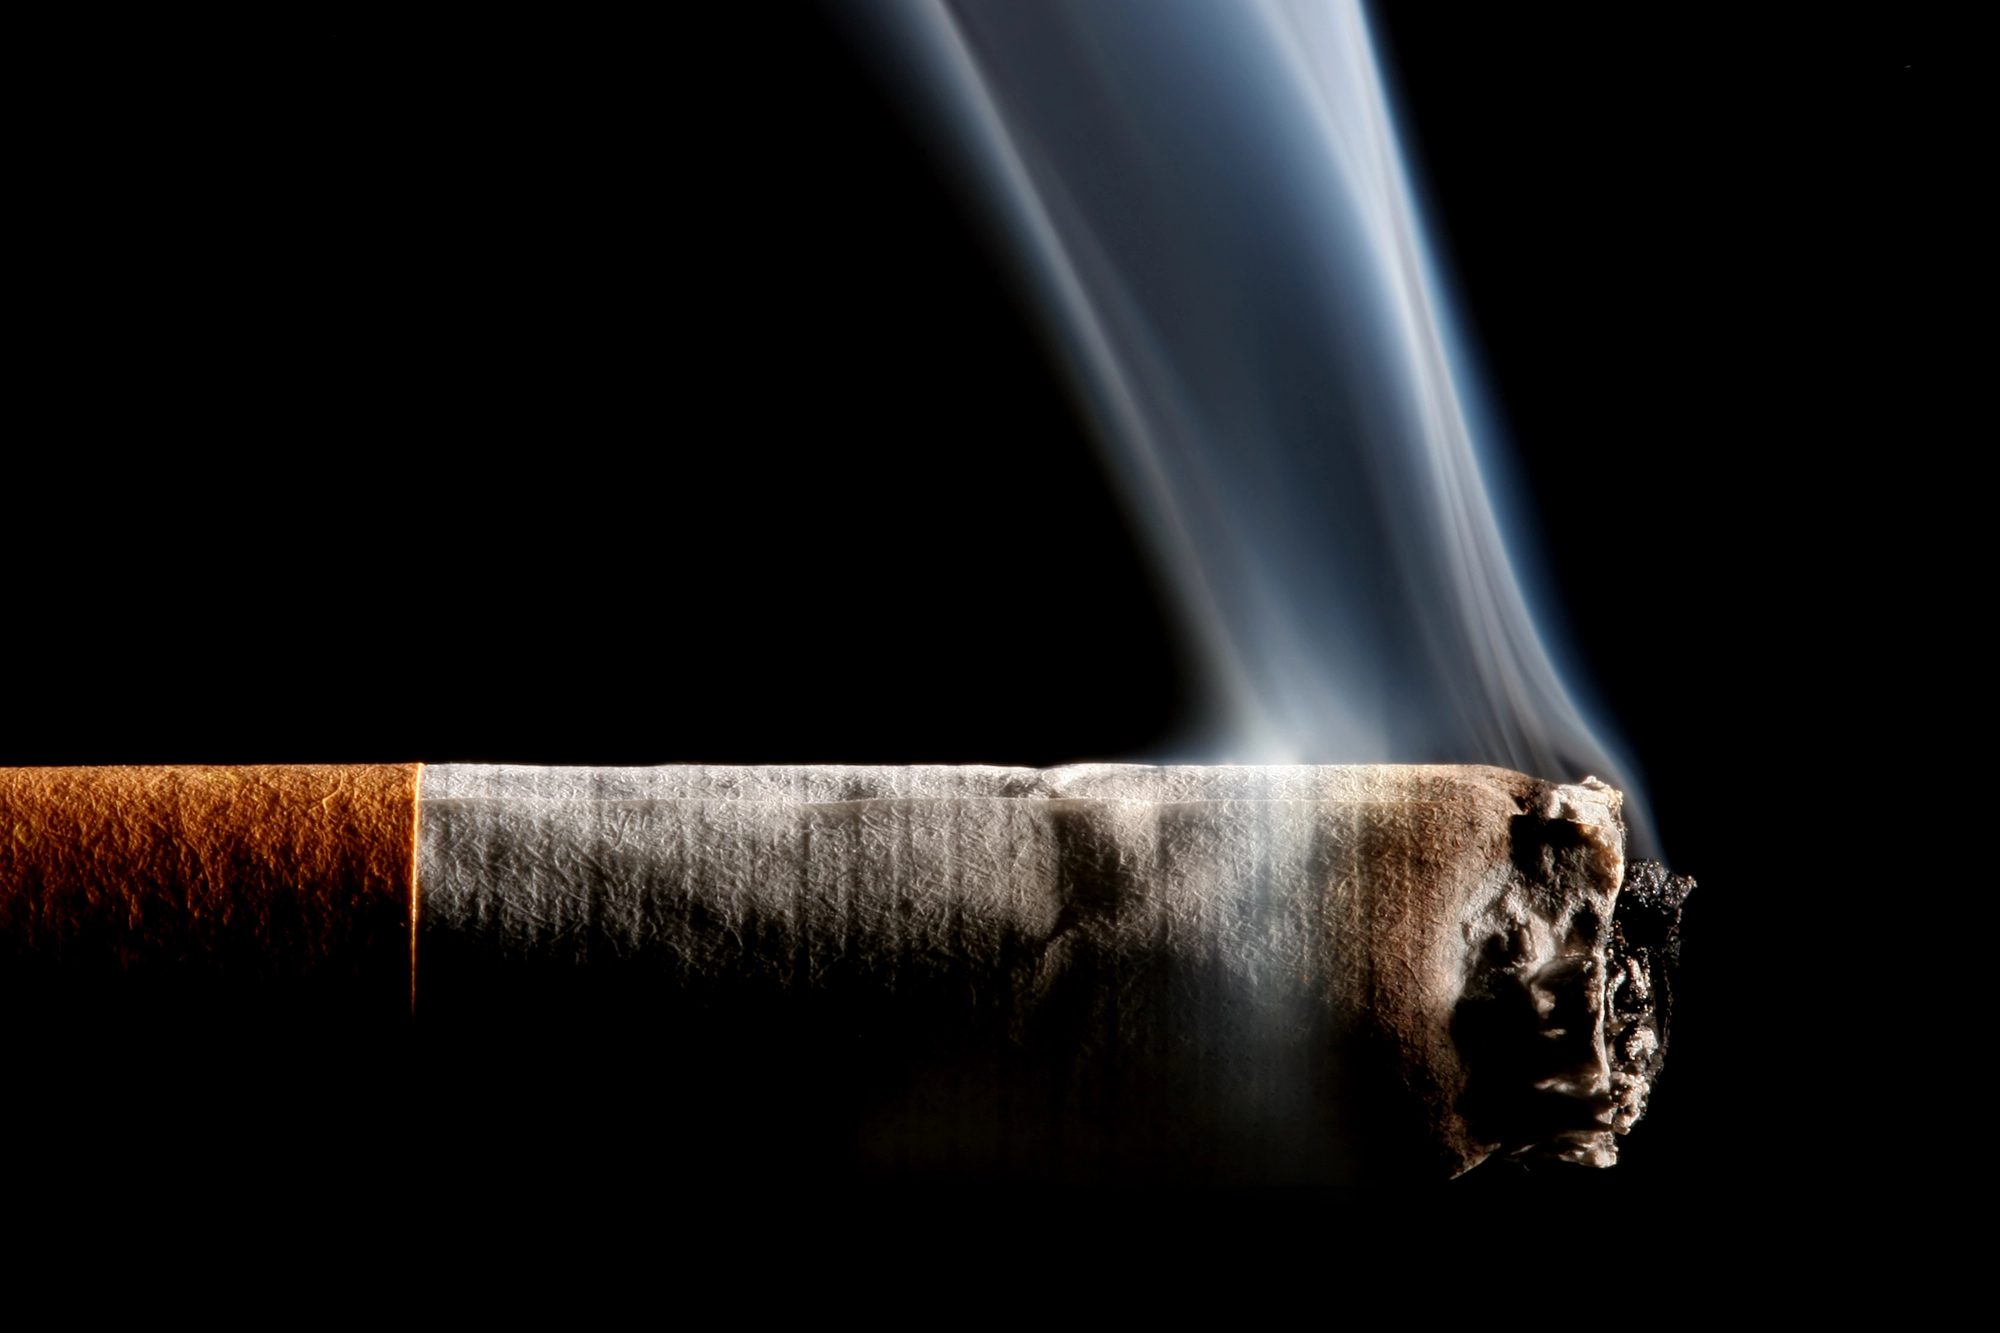 rise of smoking tobacco